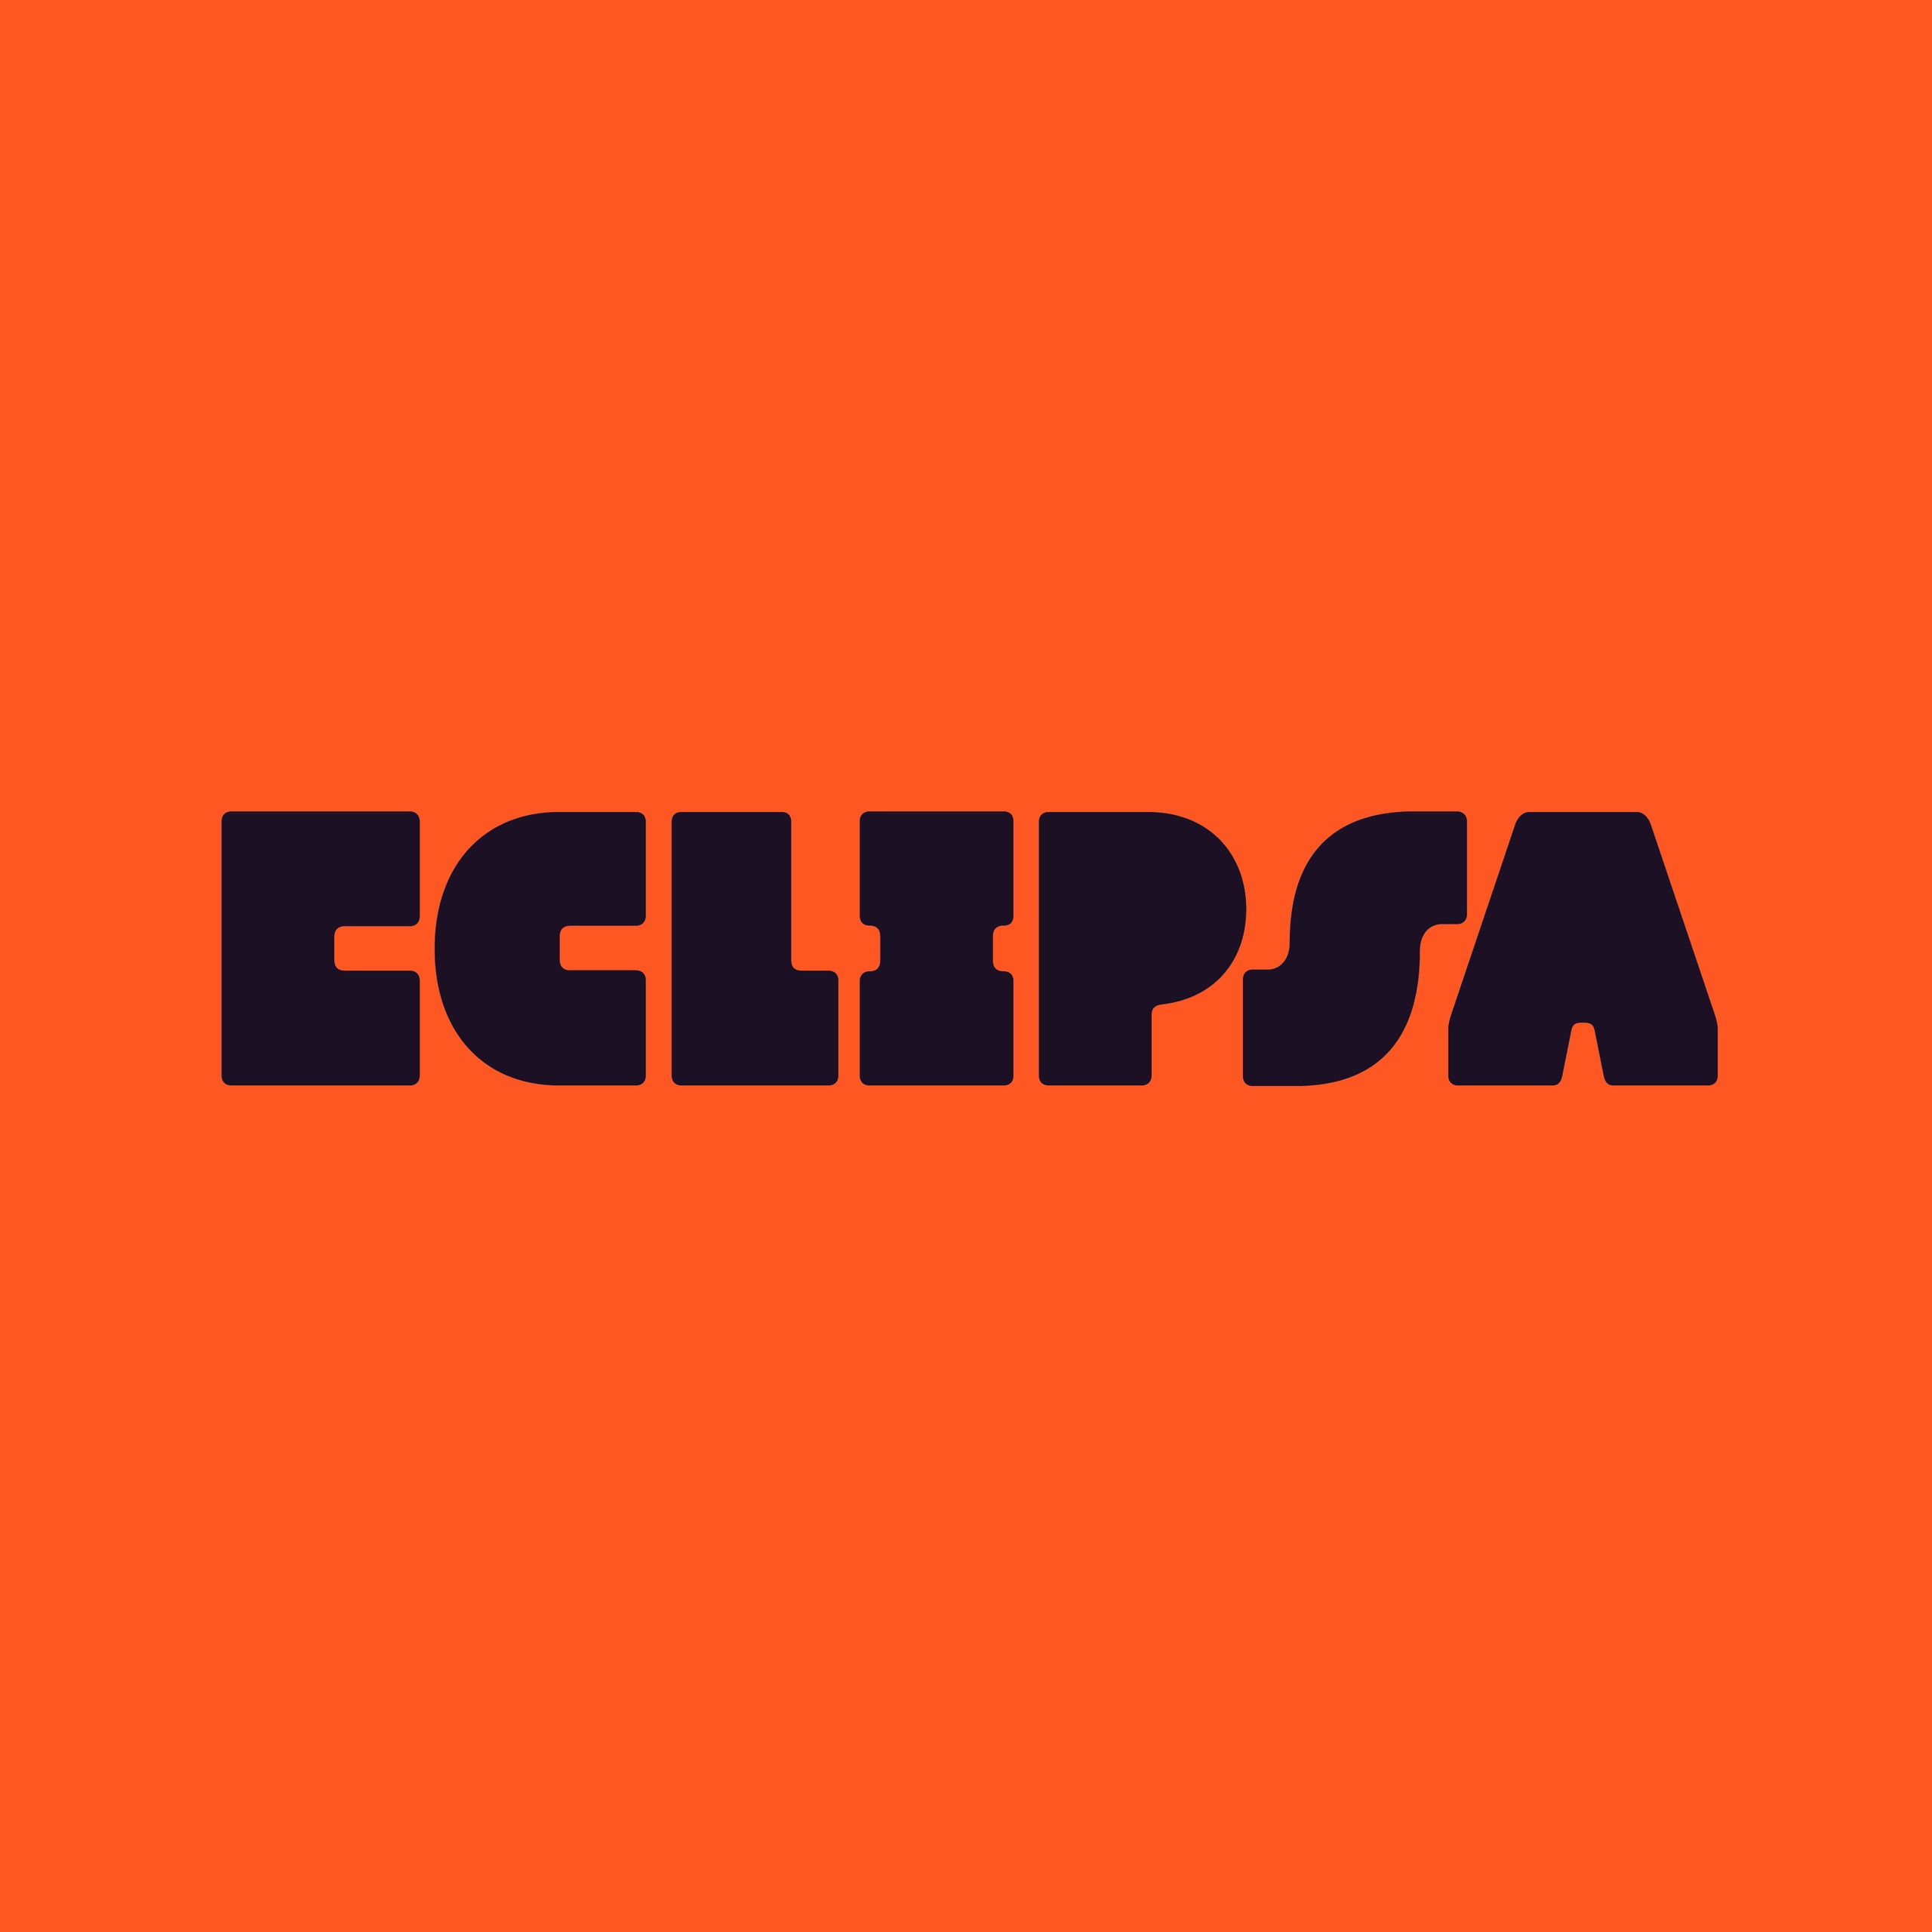 Eclipsa Font